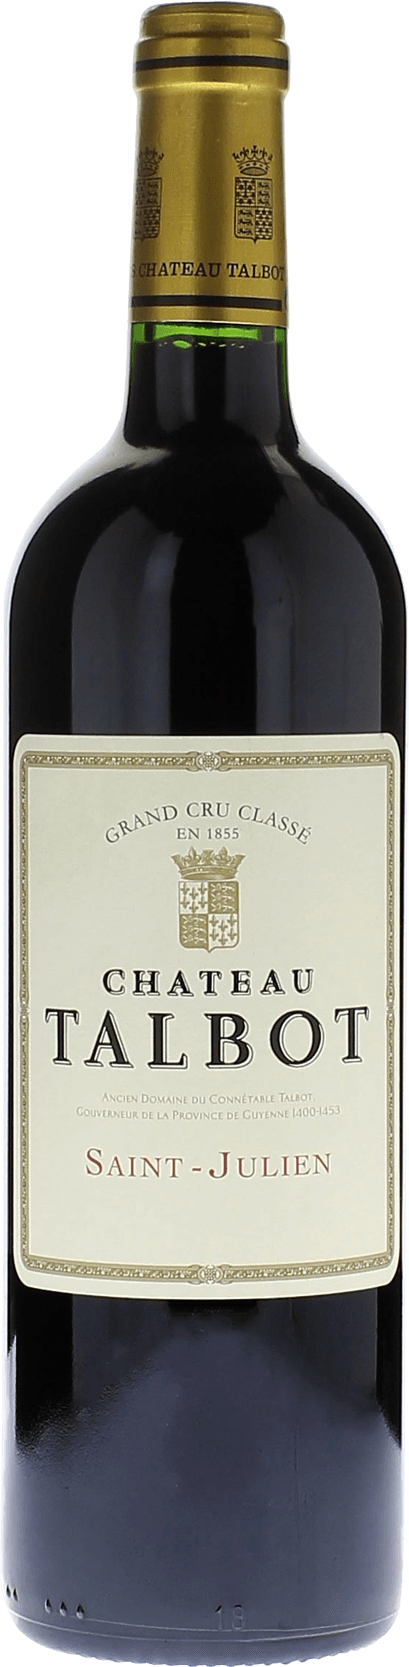 Talbot 2005 4me Grand cru class Saint-Julien, Bordeaux rouge